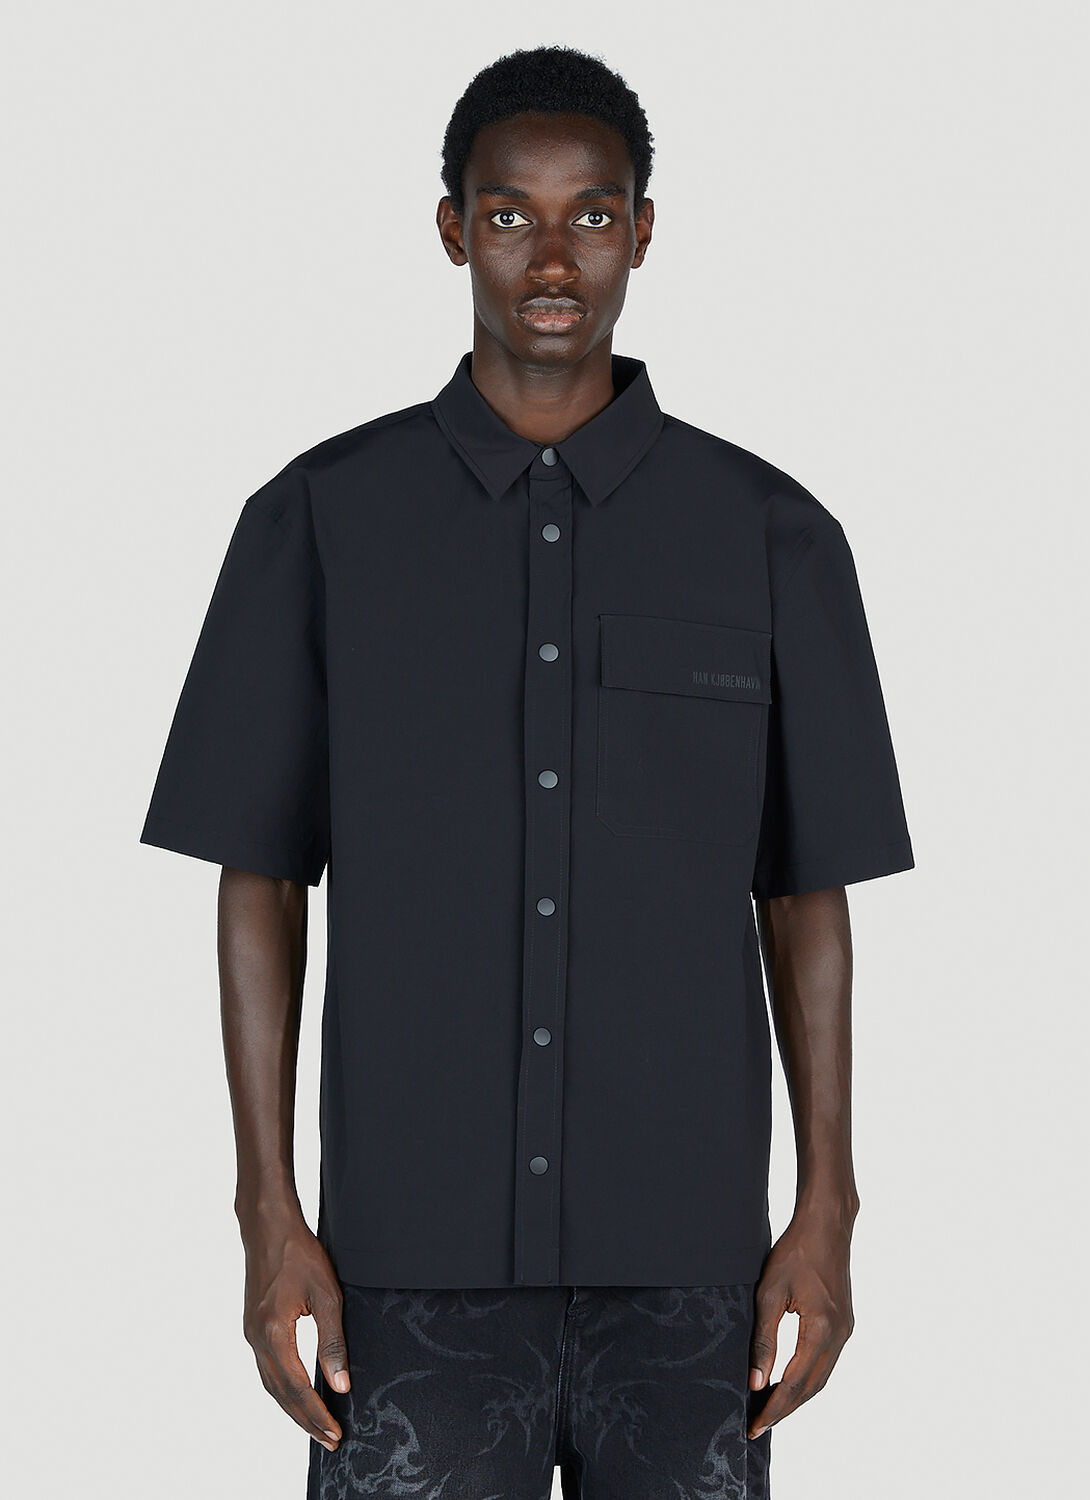 Han Kjobenhavn Nylon Short Sleeve Shirt In Black